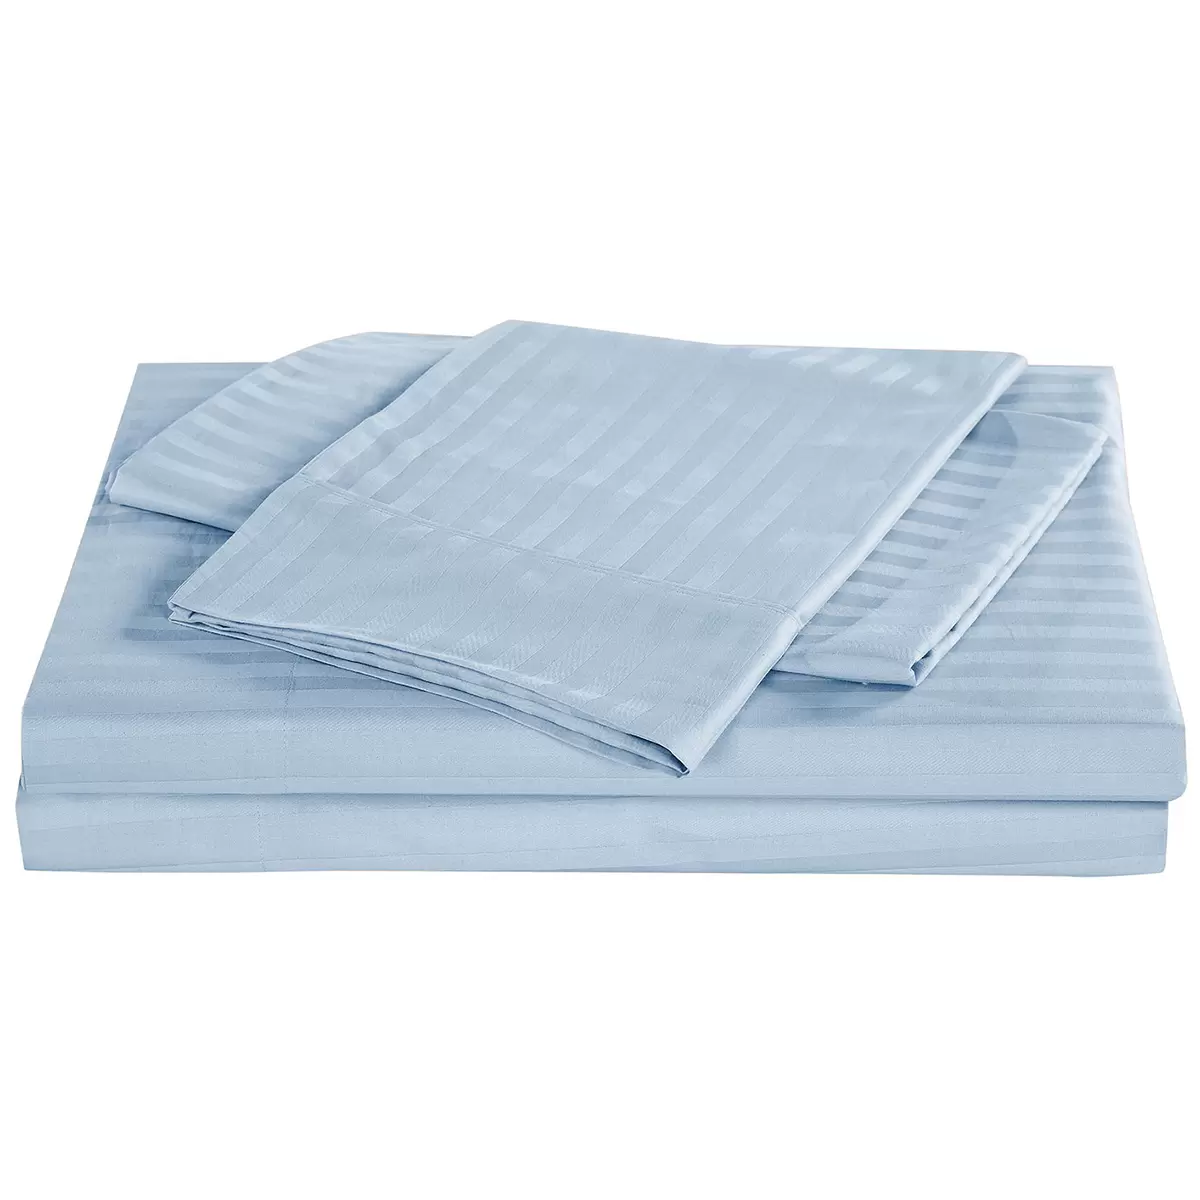 Bdirect Kensington 1200TC Cotton Sheet Set in Stripe - Double Chambray Blue